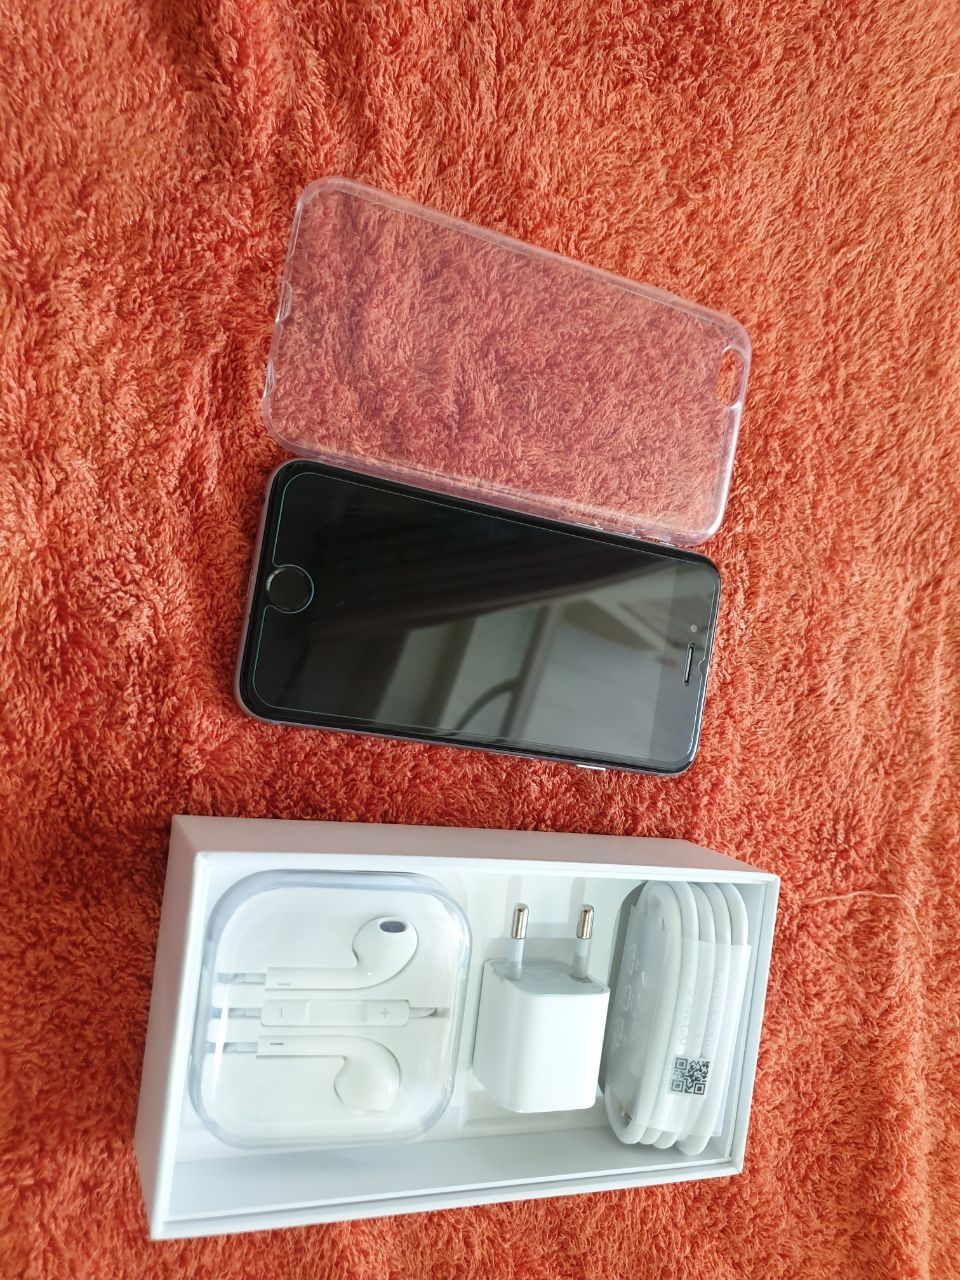 Iphone 6s Space Gray 64Gb Tinu Karobka Dk Xammayogi ishlidi Full kompl